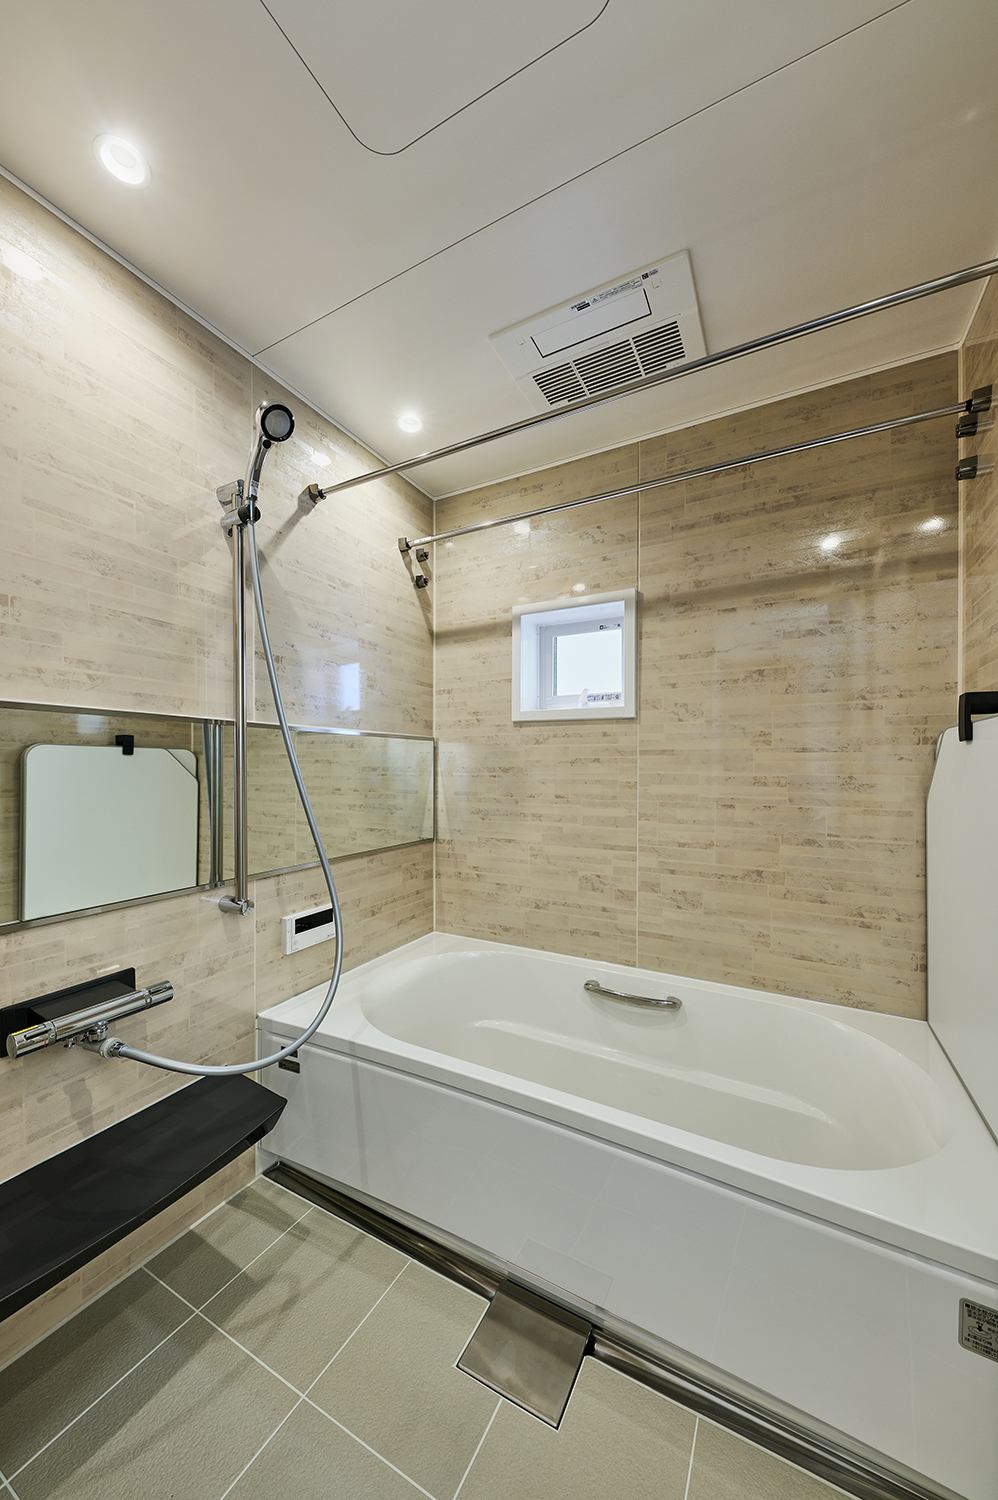 【ユニットバス】浴室には足を伸ばしてゆったりとリラックスできるバスタブを設置しました。浴室暖房乾燥機付き。